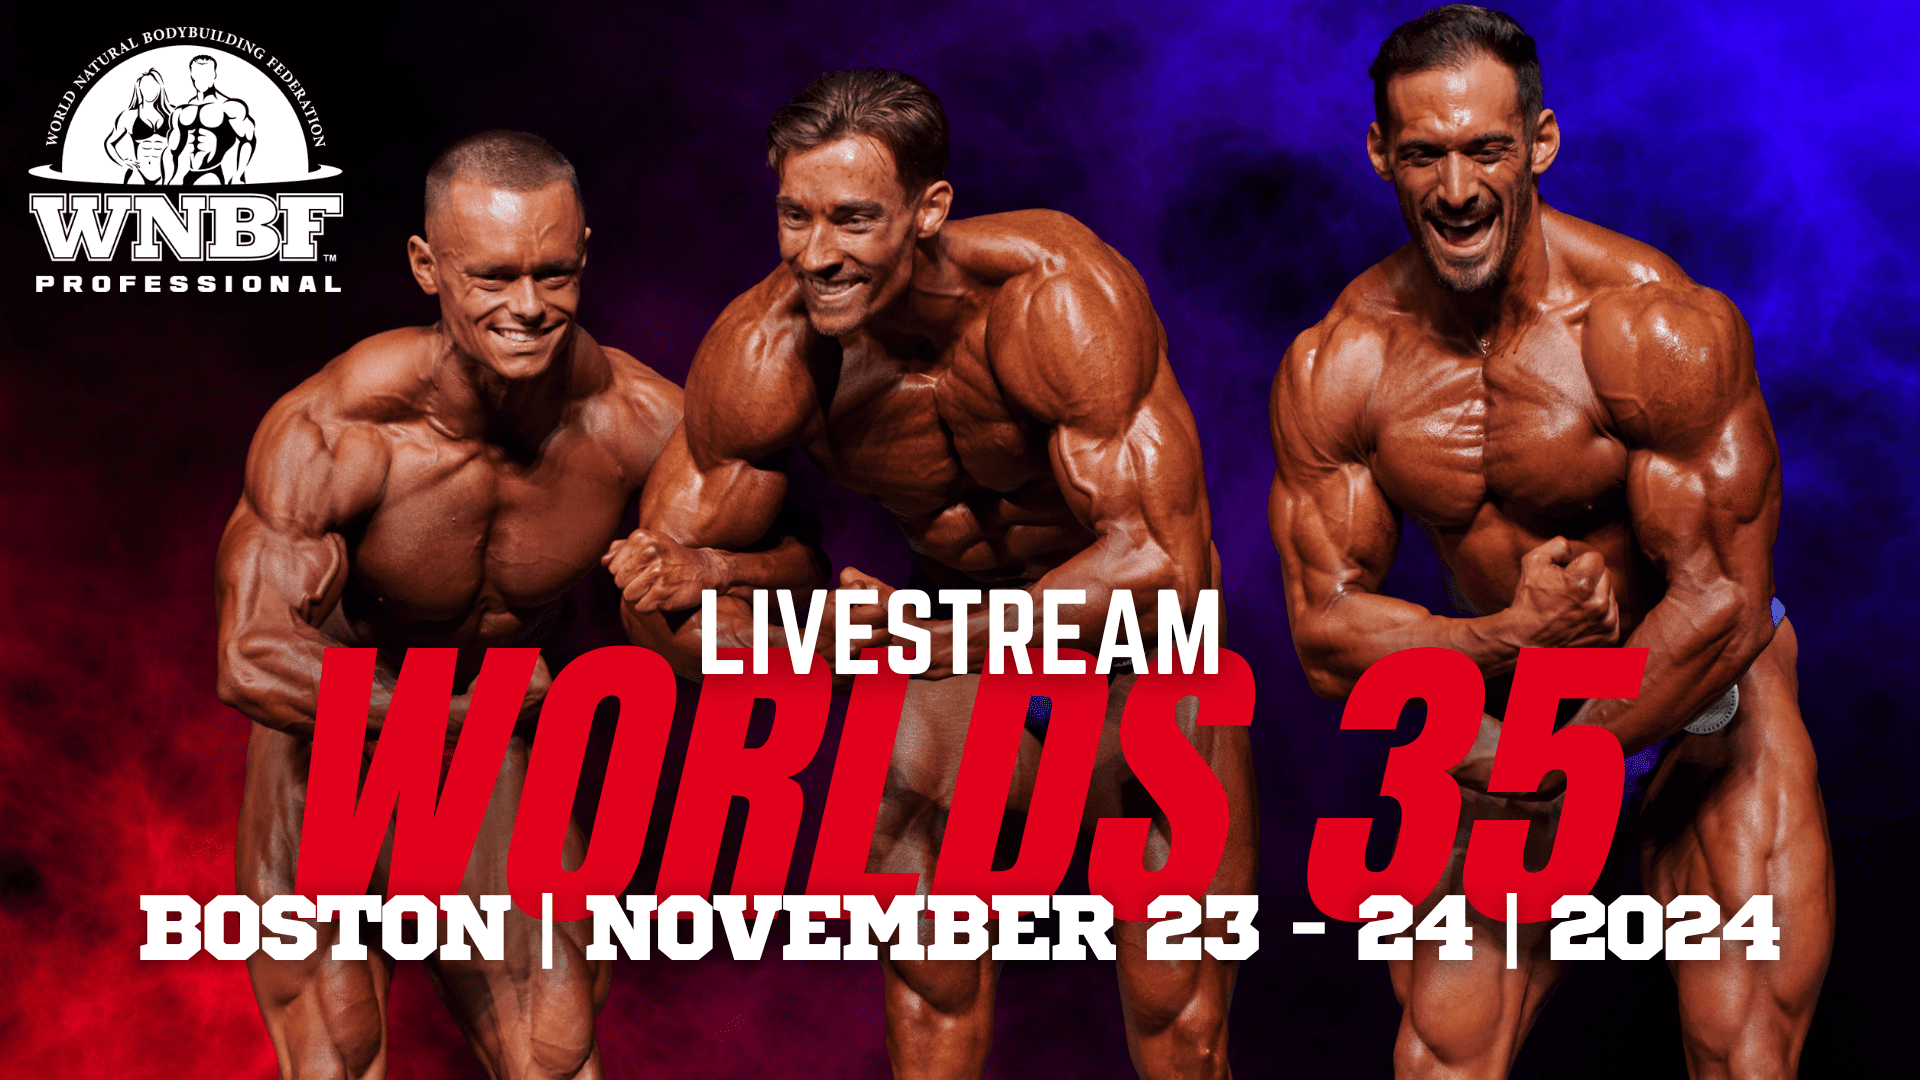 Worlds 35 Livestream Announcement Buy Tickets Online